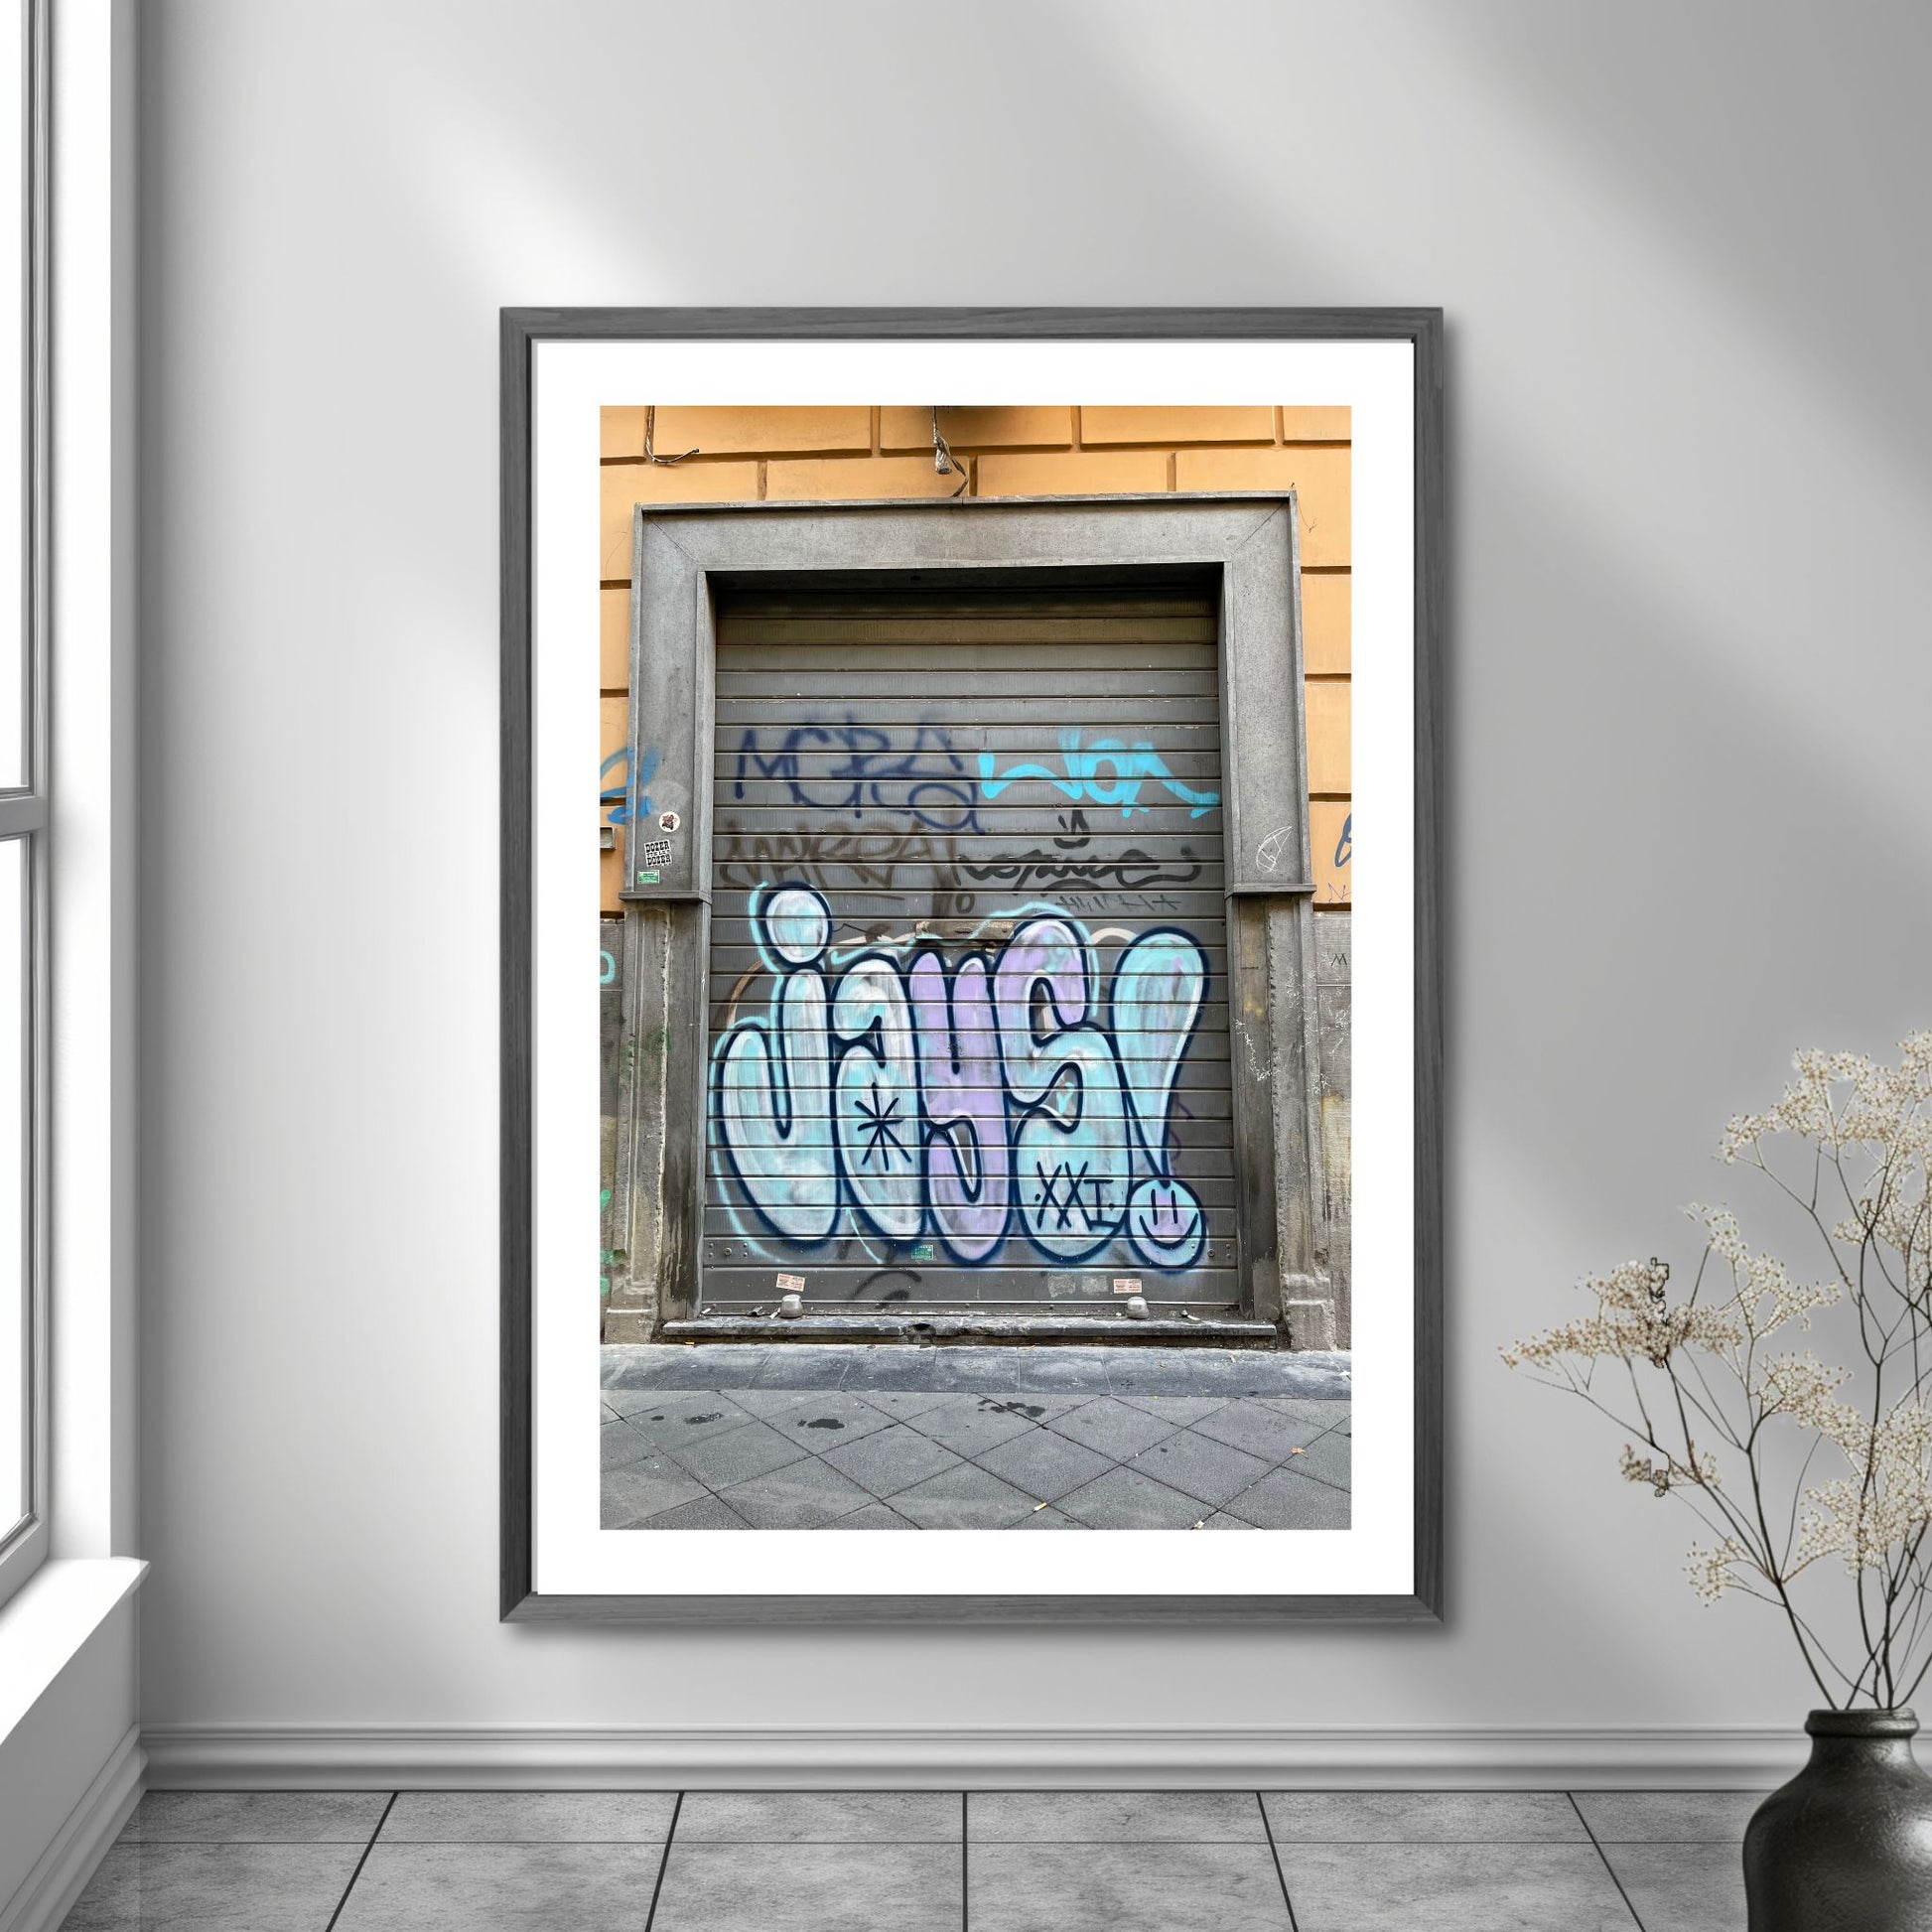 La deg bli fengslet av atmosfæren og den unike gatekunsten i Napoli med "Graffiti – Napoli". Dette levende bildet, fotografert i Centro Storico, gir deg en følelse av autentisitet og opplevelse av den lokale kulturen og et glimt av Napoletansk gatekultur. Illustrasjon viser motivet som plakat.